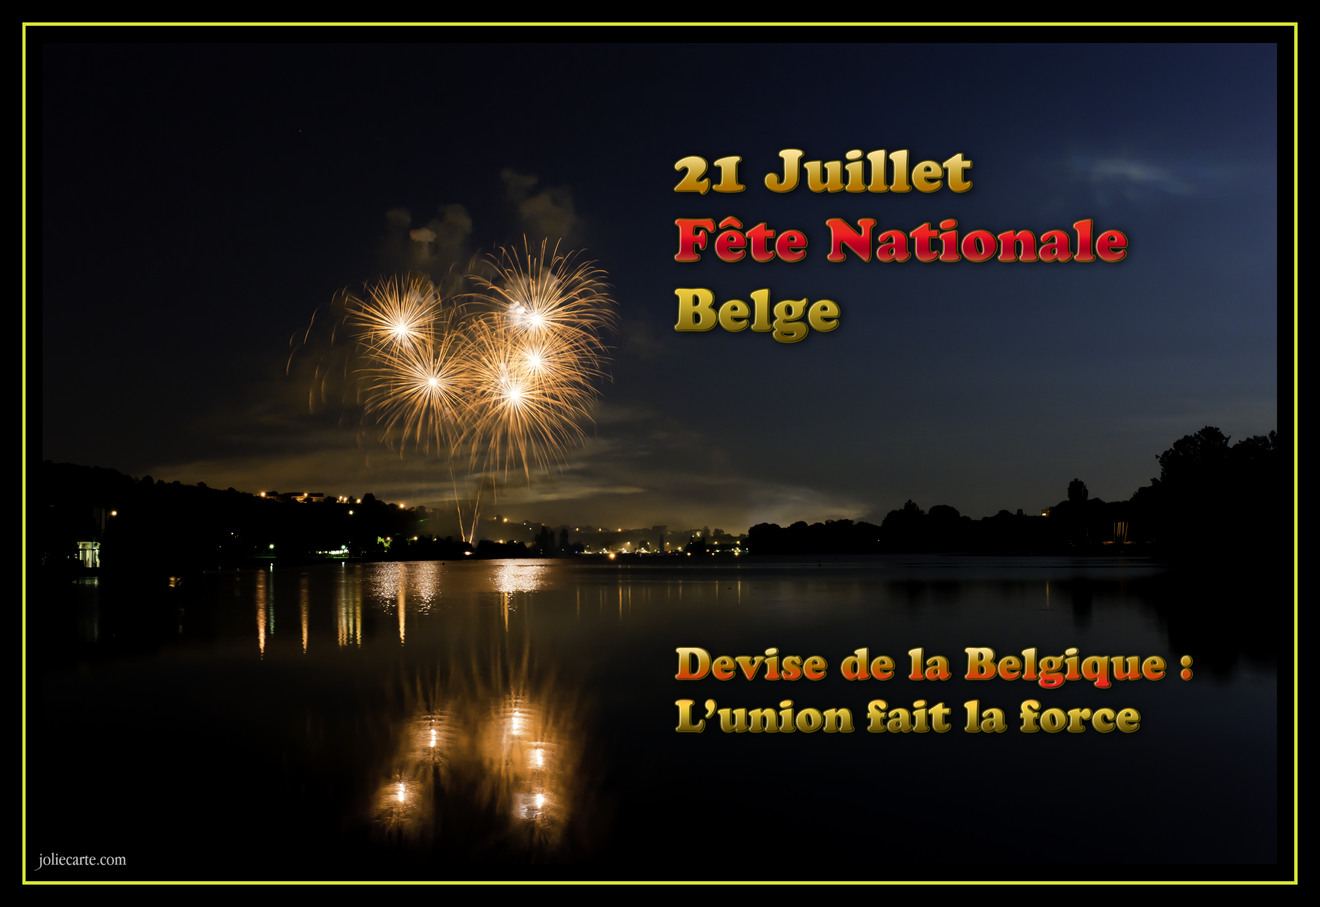 http://fichiers.joliecarte.com/images/cartes/fr/cartes-virtuelles/fete_nationale_belgique/belgique-fete-nationale.jpg